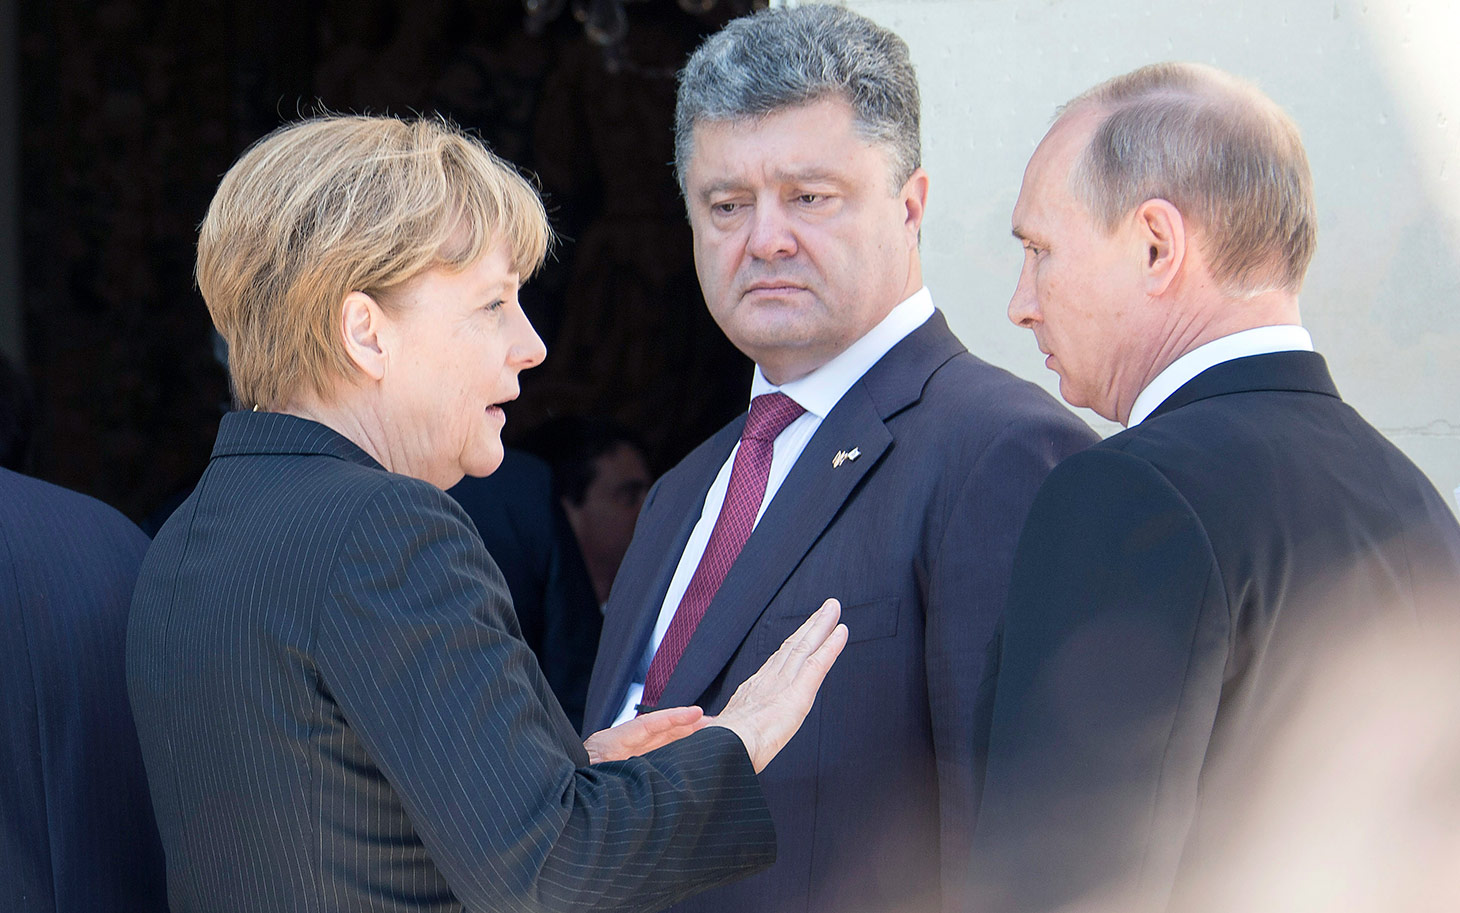  Crisi Ucraina, a Milano faccia a faccia di un ora e mezza tra Putin e Poroshenko